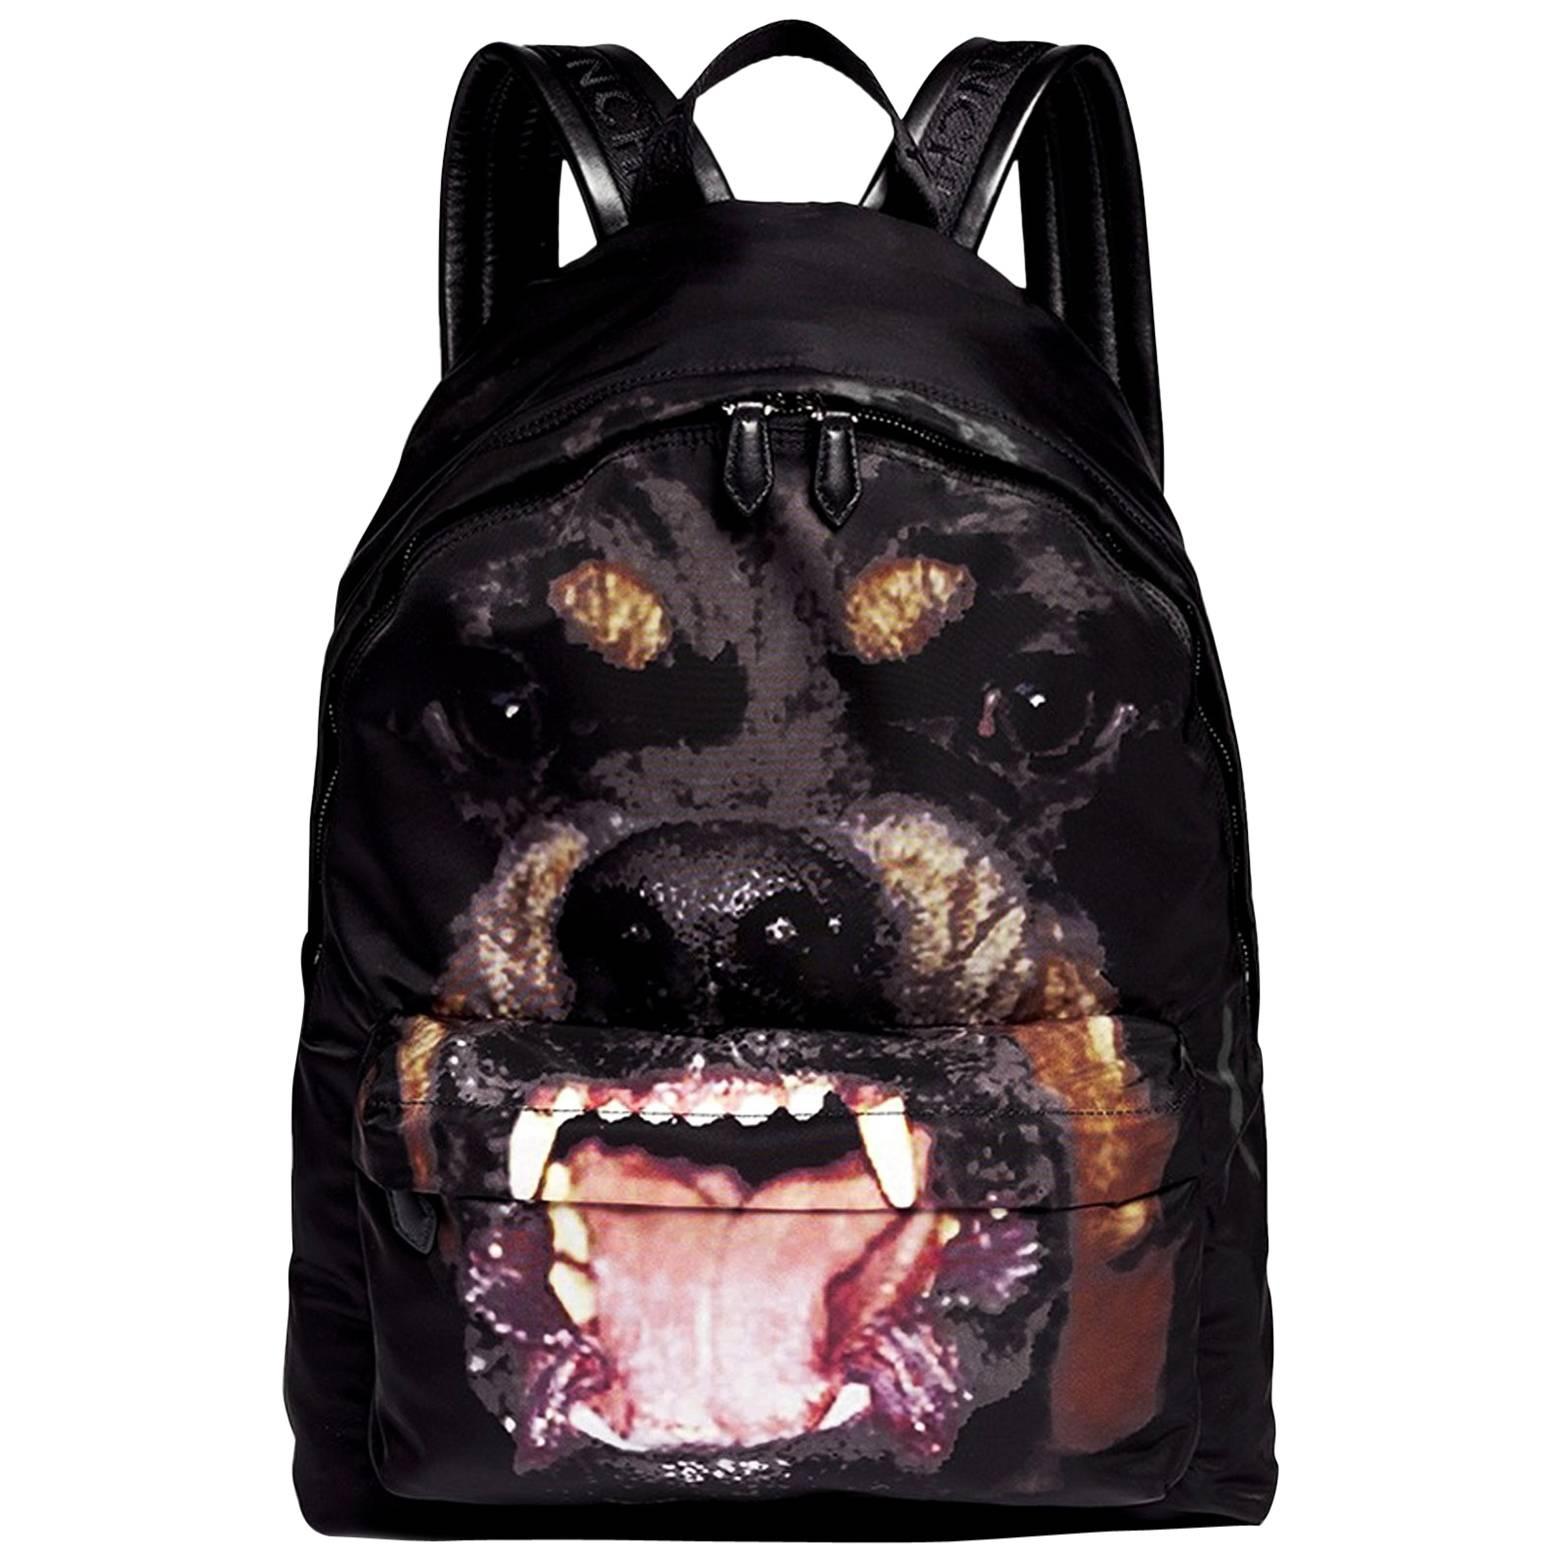 Givenchy Black Rottweiler Backpack Bag